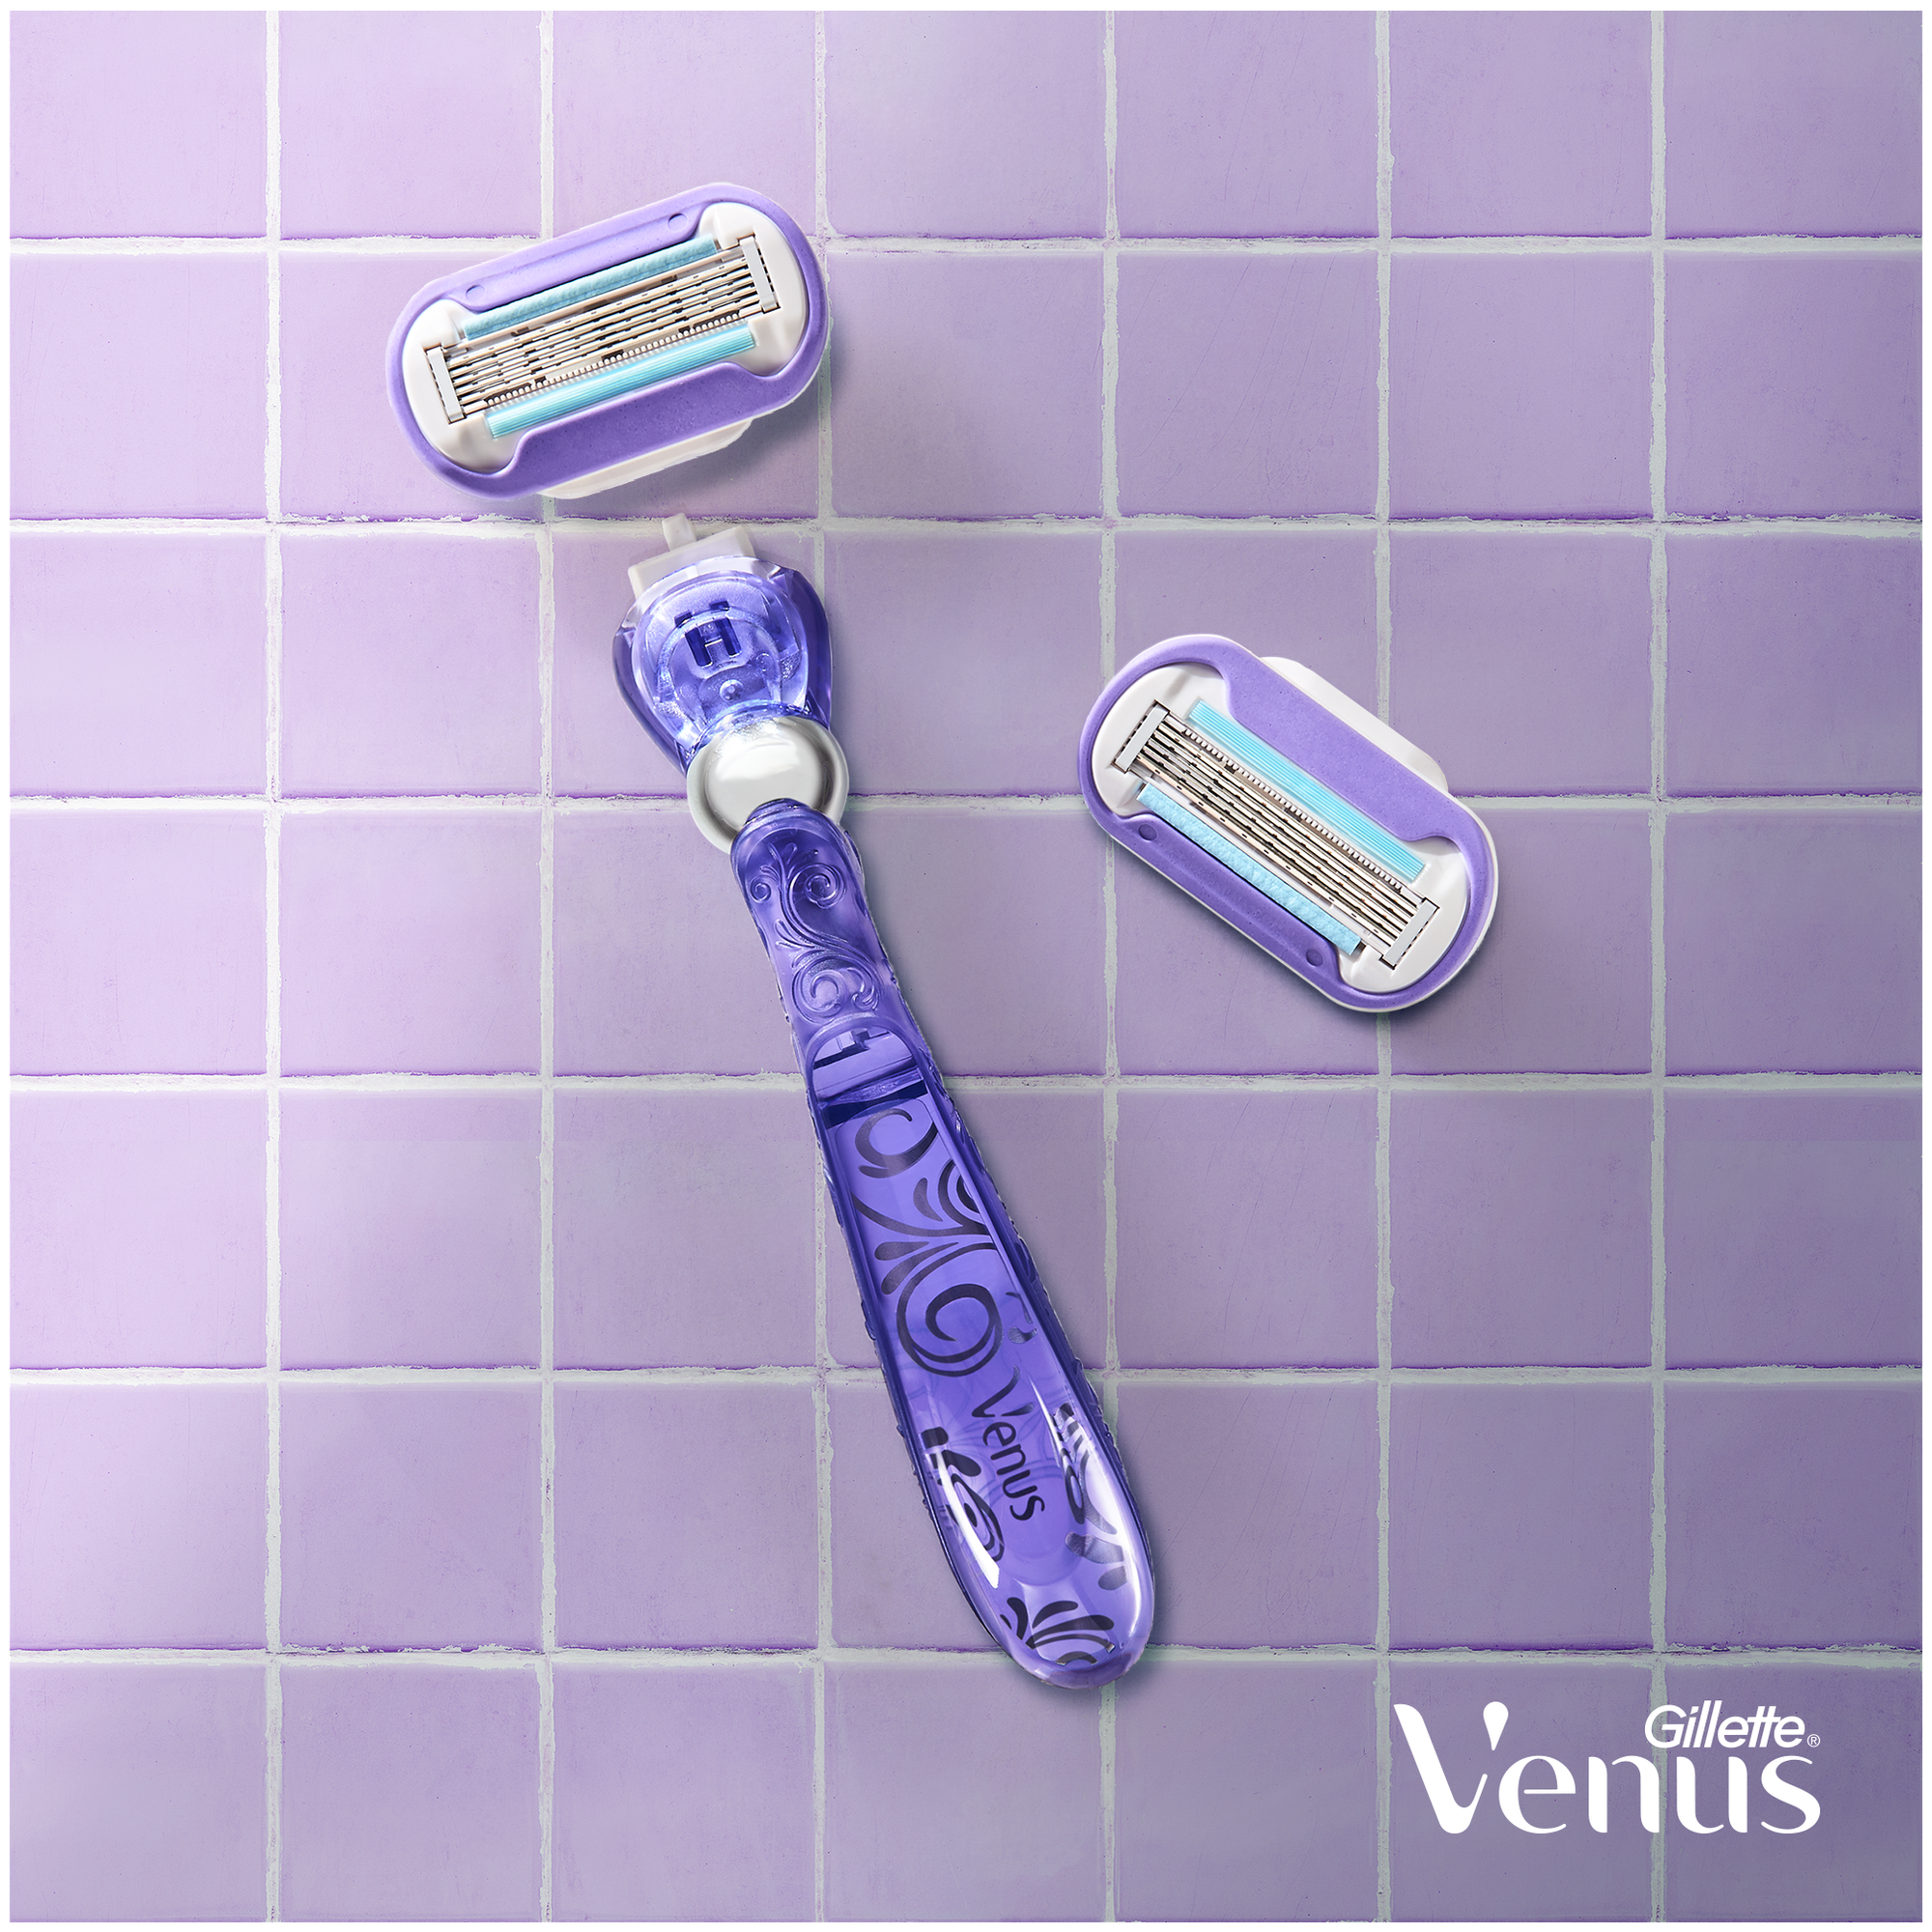 Venus Набор Swirl бритва + 2 сменные кассеты + косметичка, с 2 сменными лезвиями в комплекте